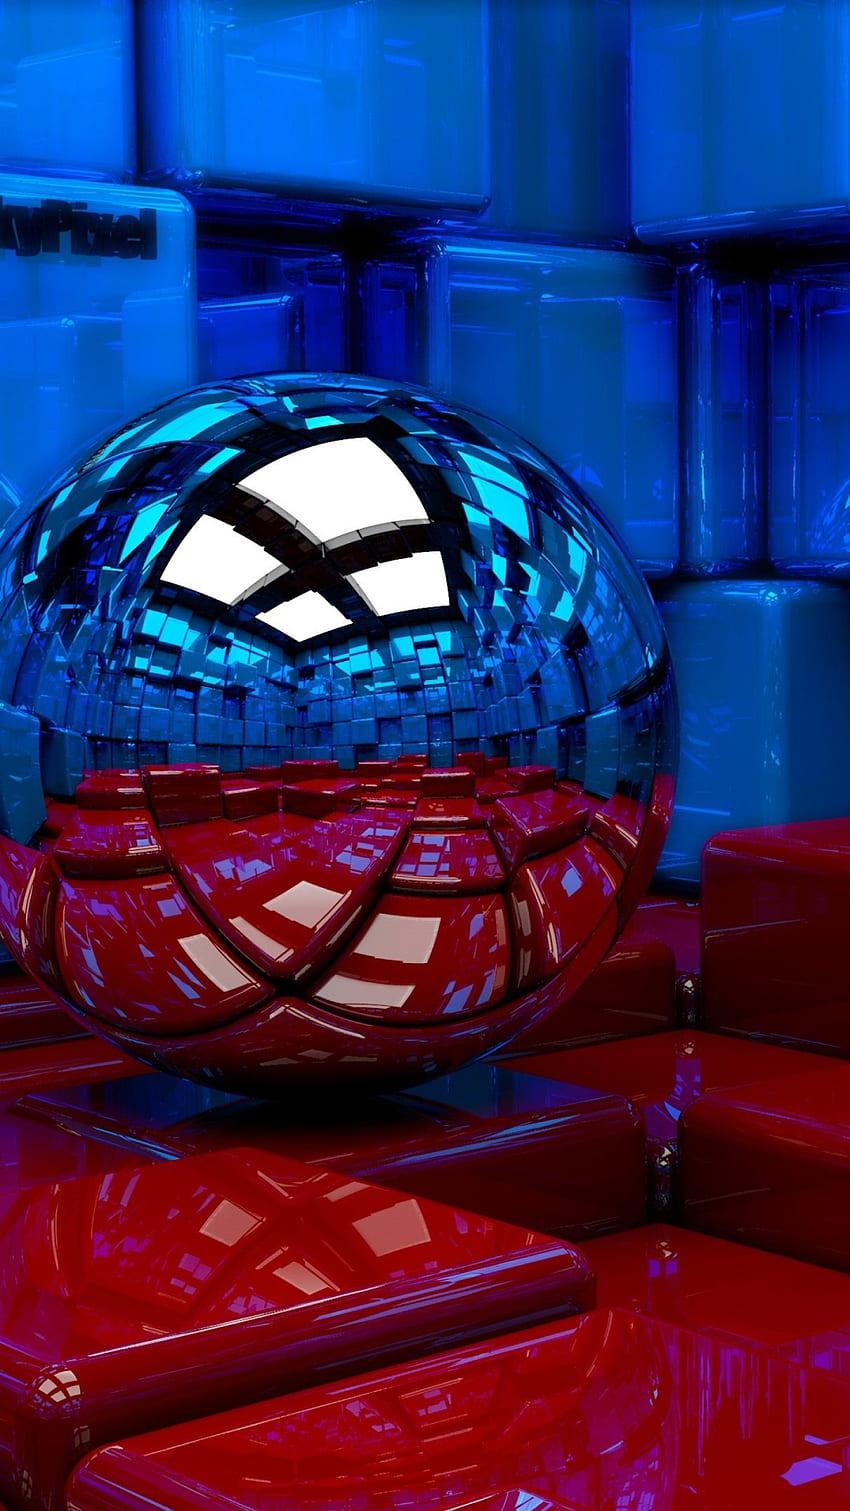 Blue Sphere Red Mirror là một tác phẩm nghệ thuật số đầy ấn tượng và bắt mắt. Với màu xanh quyến rũ của quả cầu kết hợp cùng gương đỏ, tạo nên một hình ảnh độc đáo và thu hút cho chiếc điện thoại của bạn.